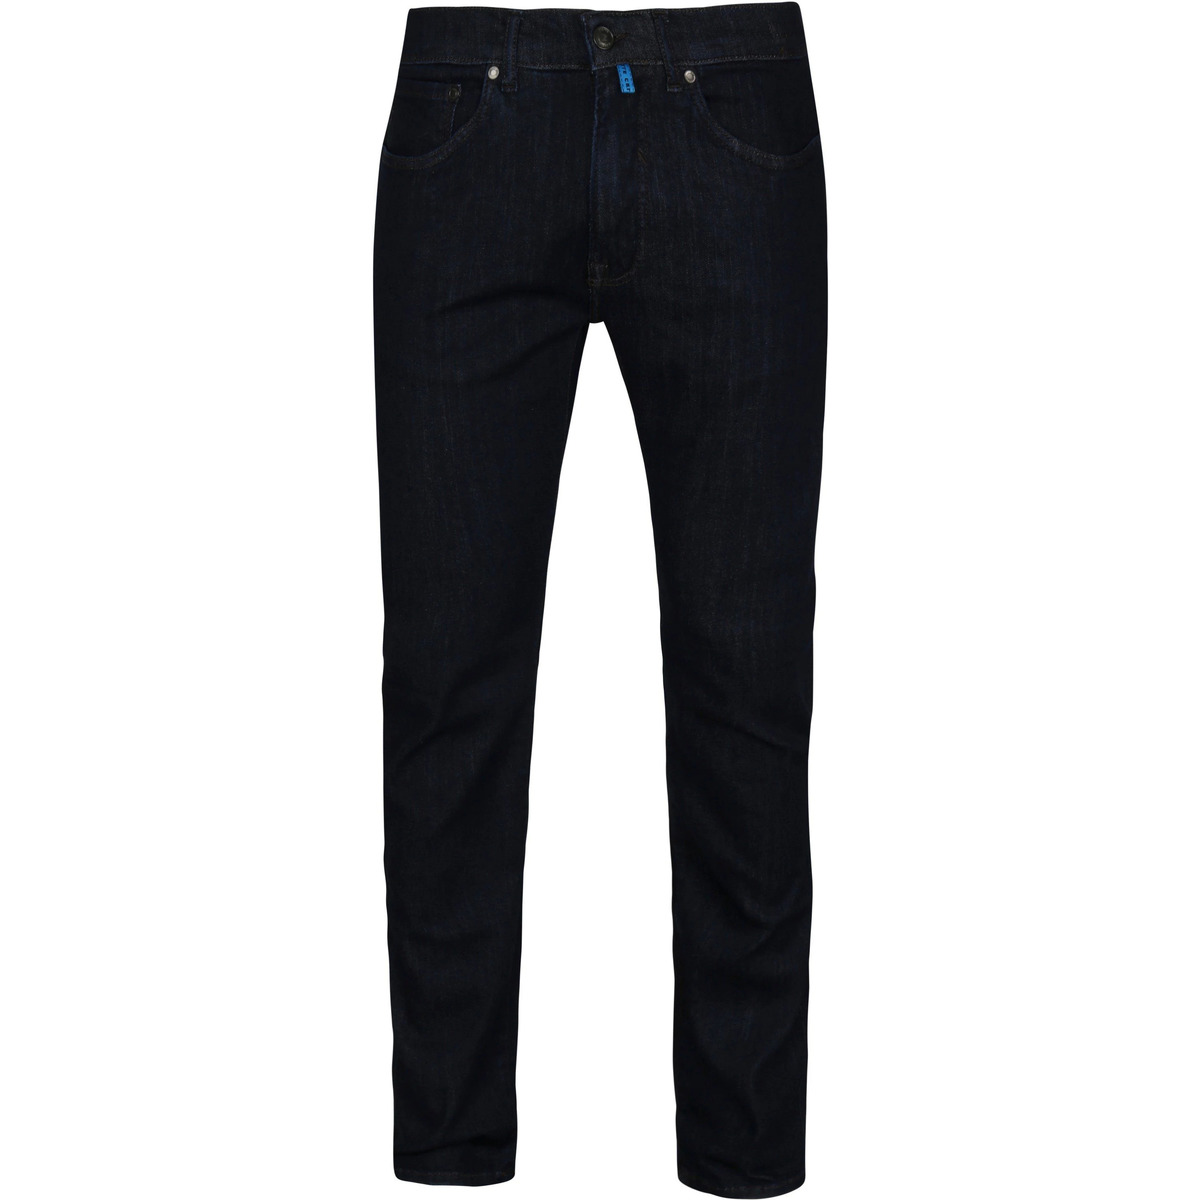 Pierre Cardin Bleu 5 Pocket Jeans Antibes Bleu Foncé FjjNnS7H